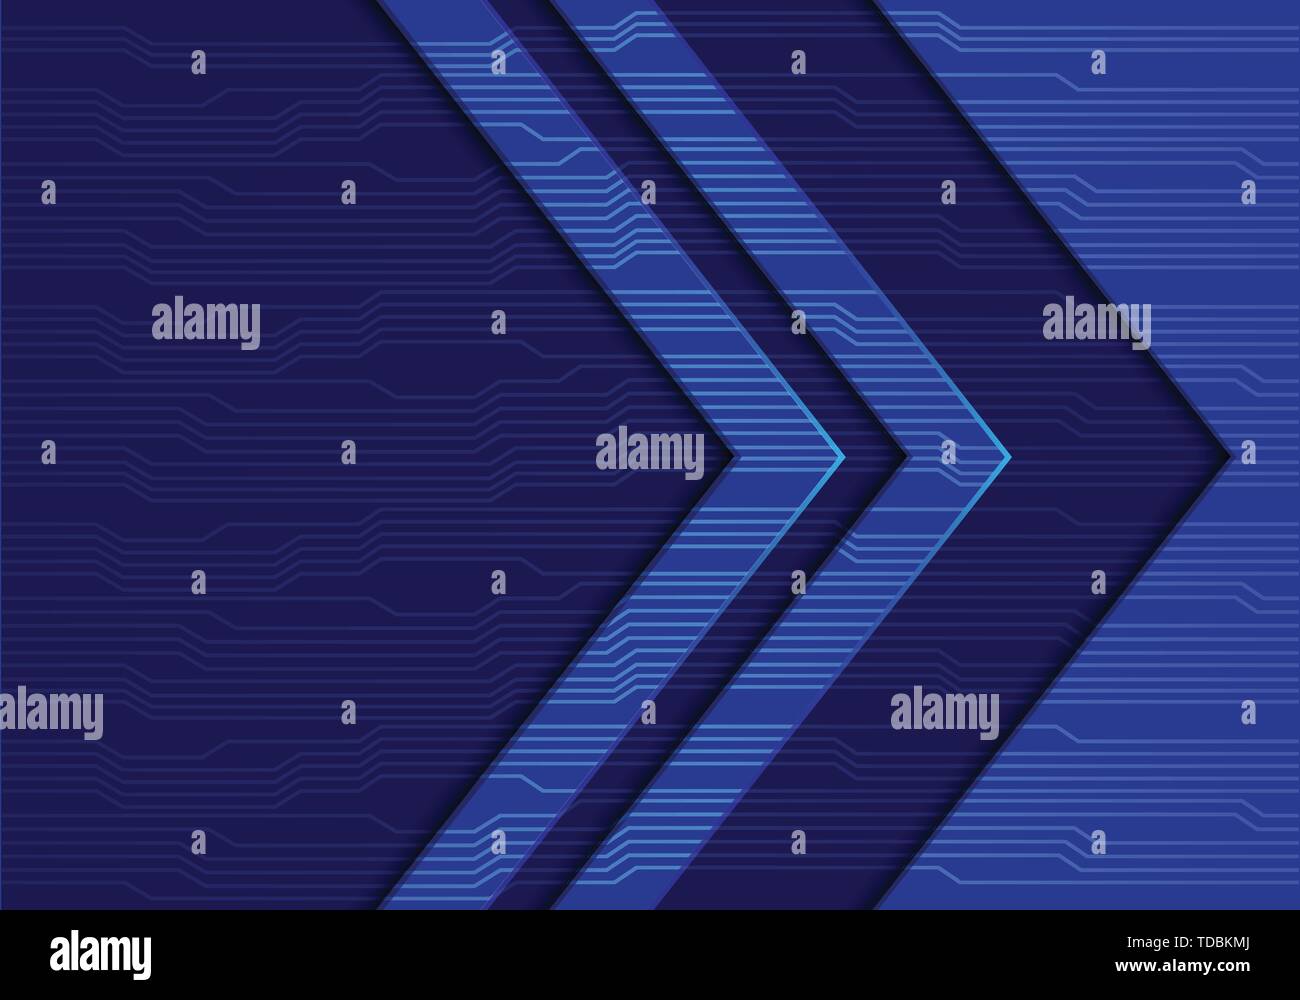 Résumé du circuit de direction de flèche bleue avec motif espace moderne design futuristic background vector illustration. Illustration de Vecteur